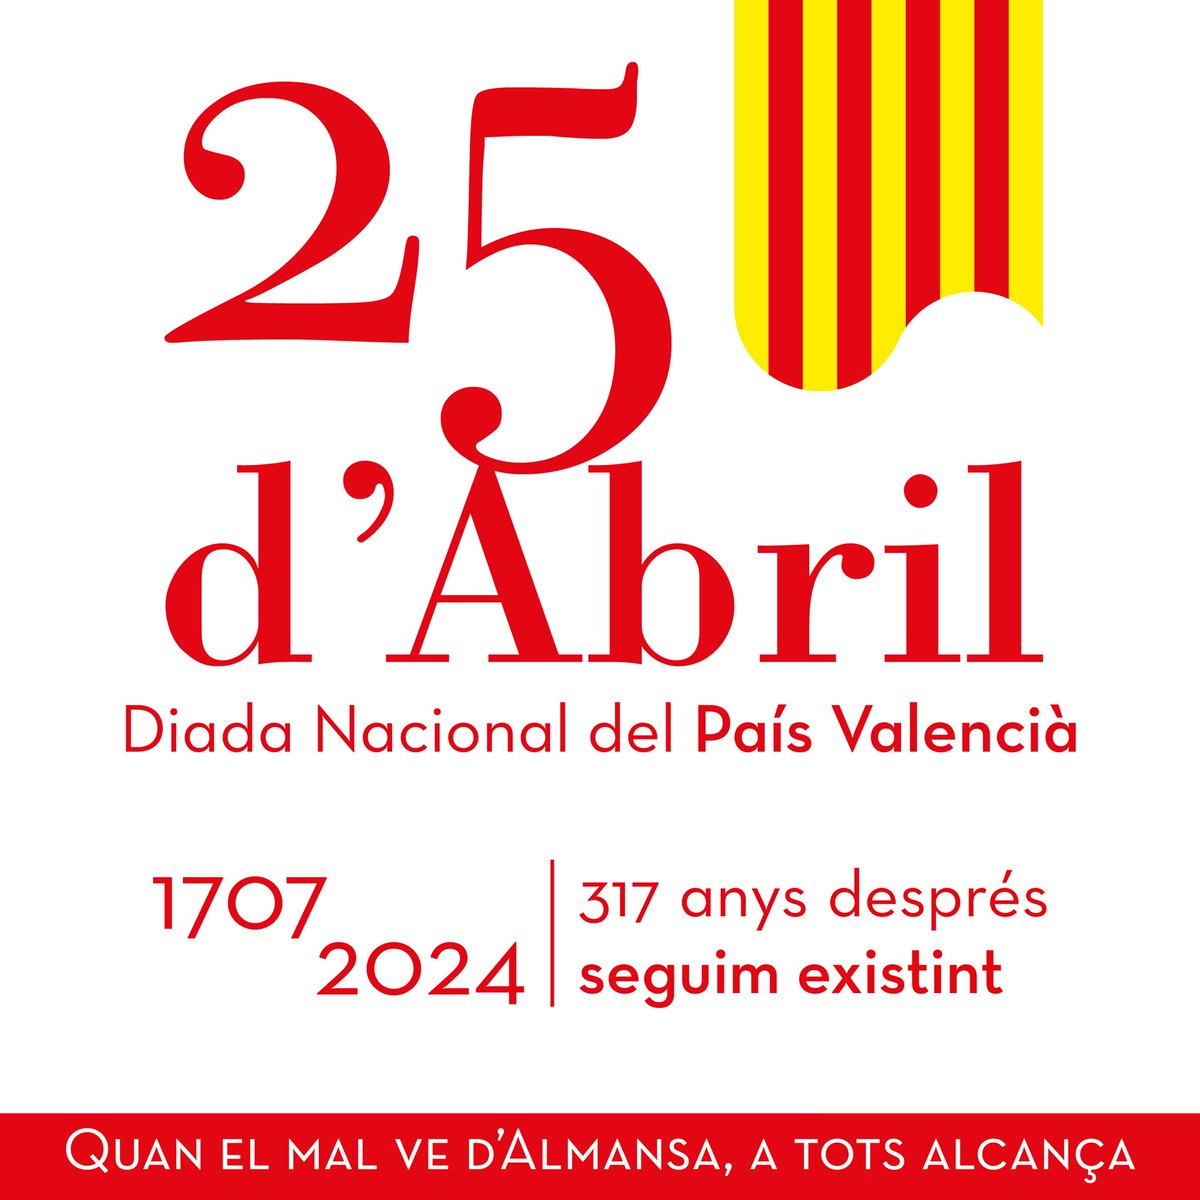 #DiadaNacionalPaísValencià 
#25dAbril #PaísValencià